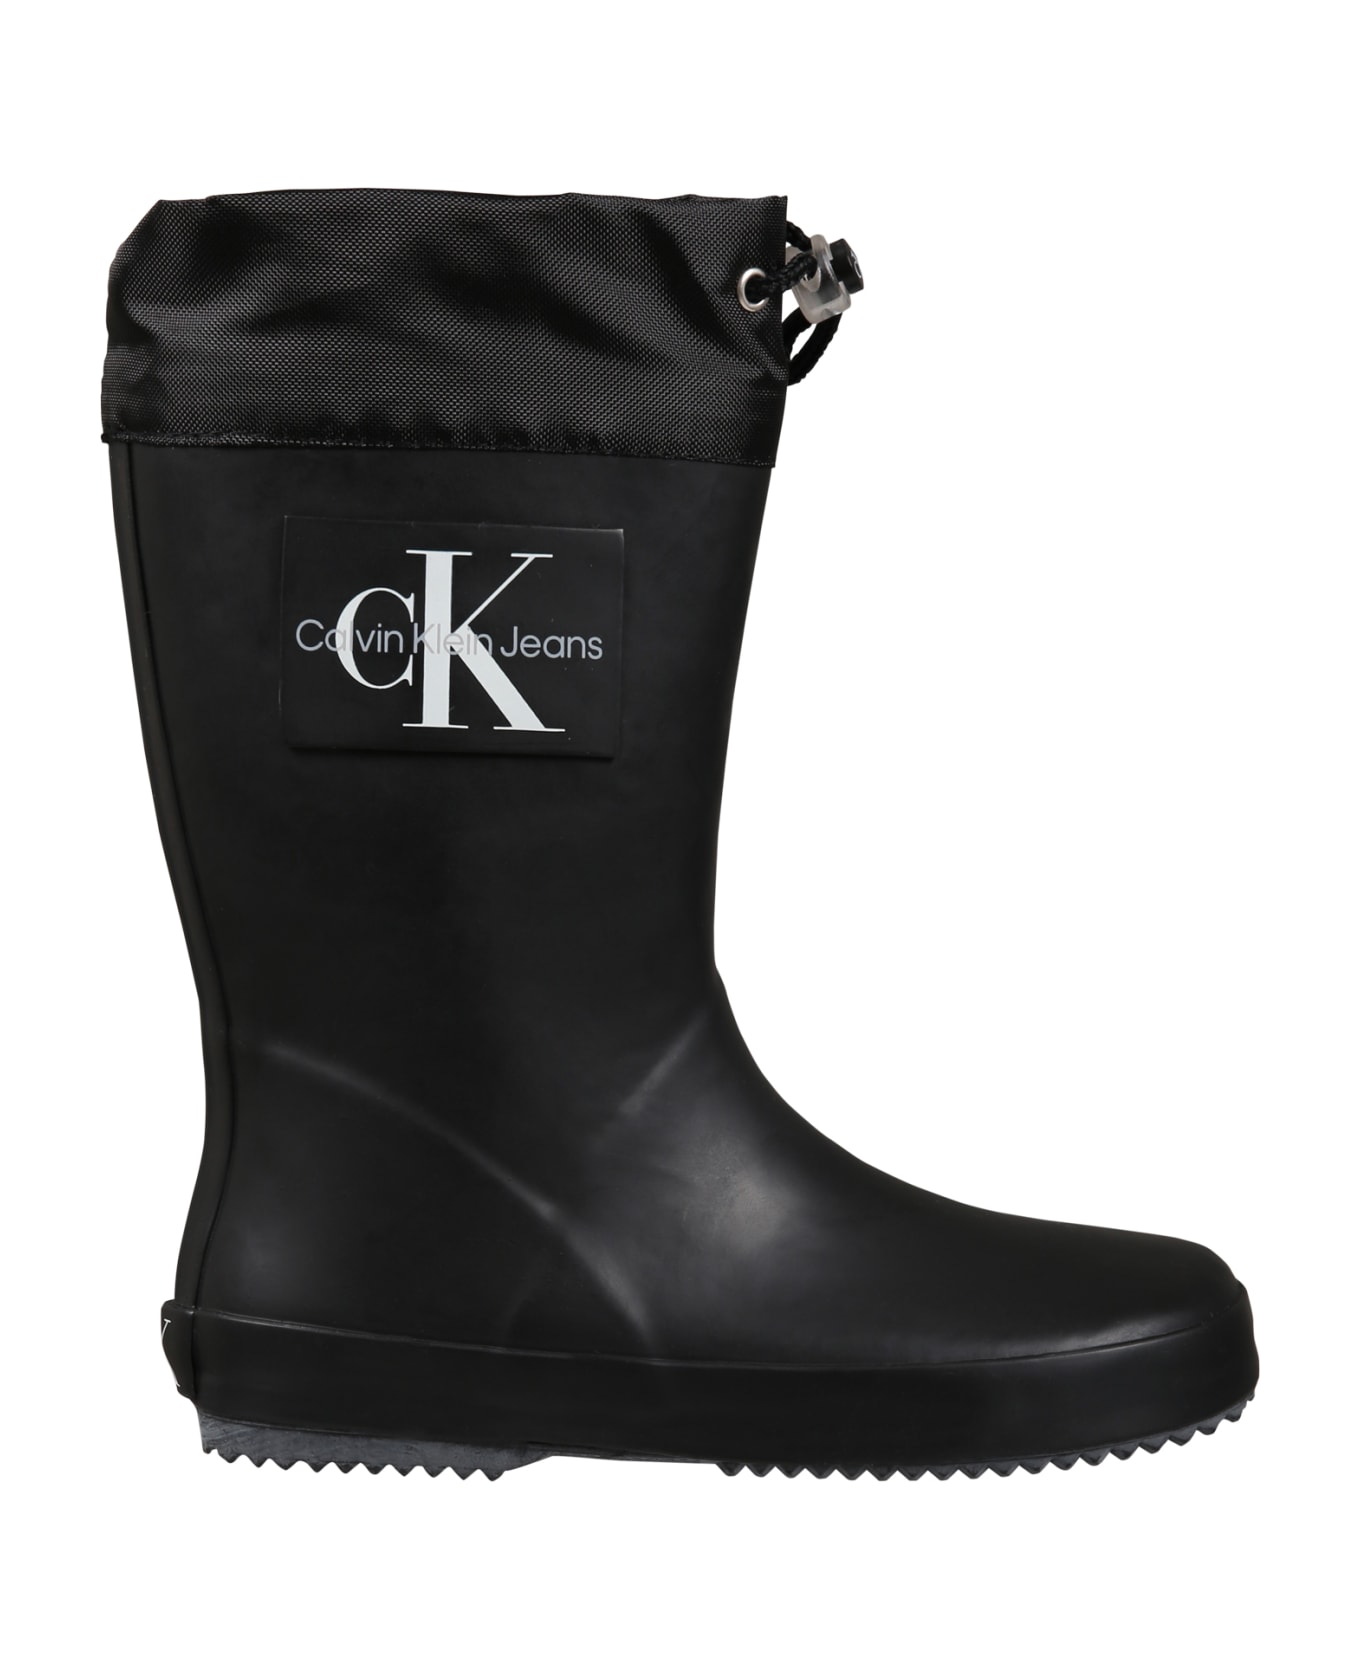 Calvin Klein Black Boots For Girl - Black